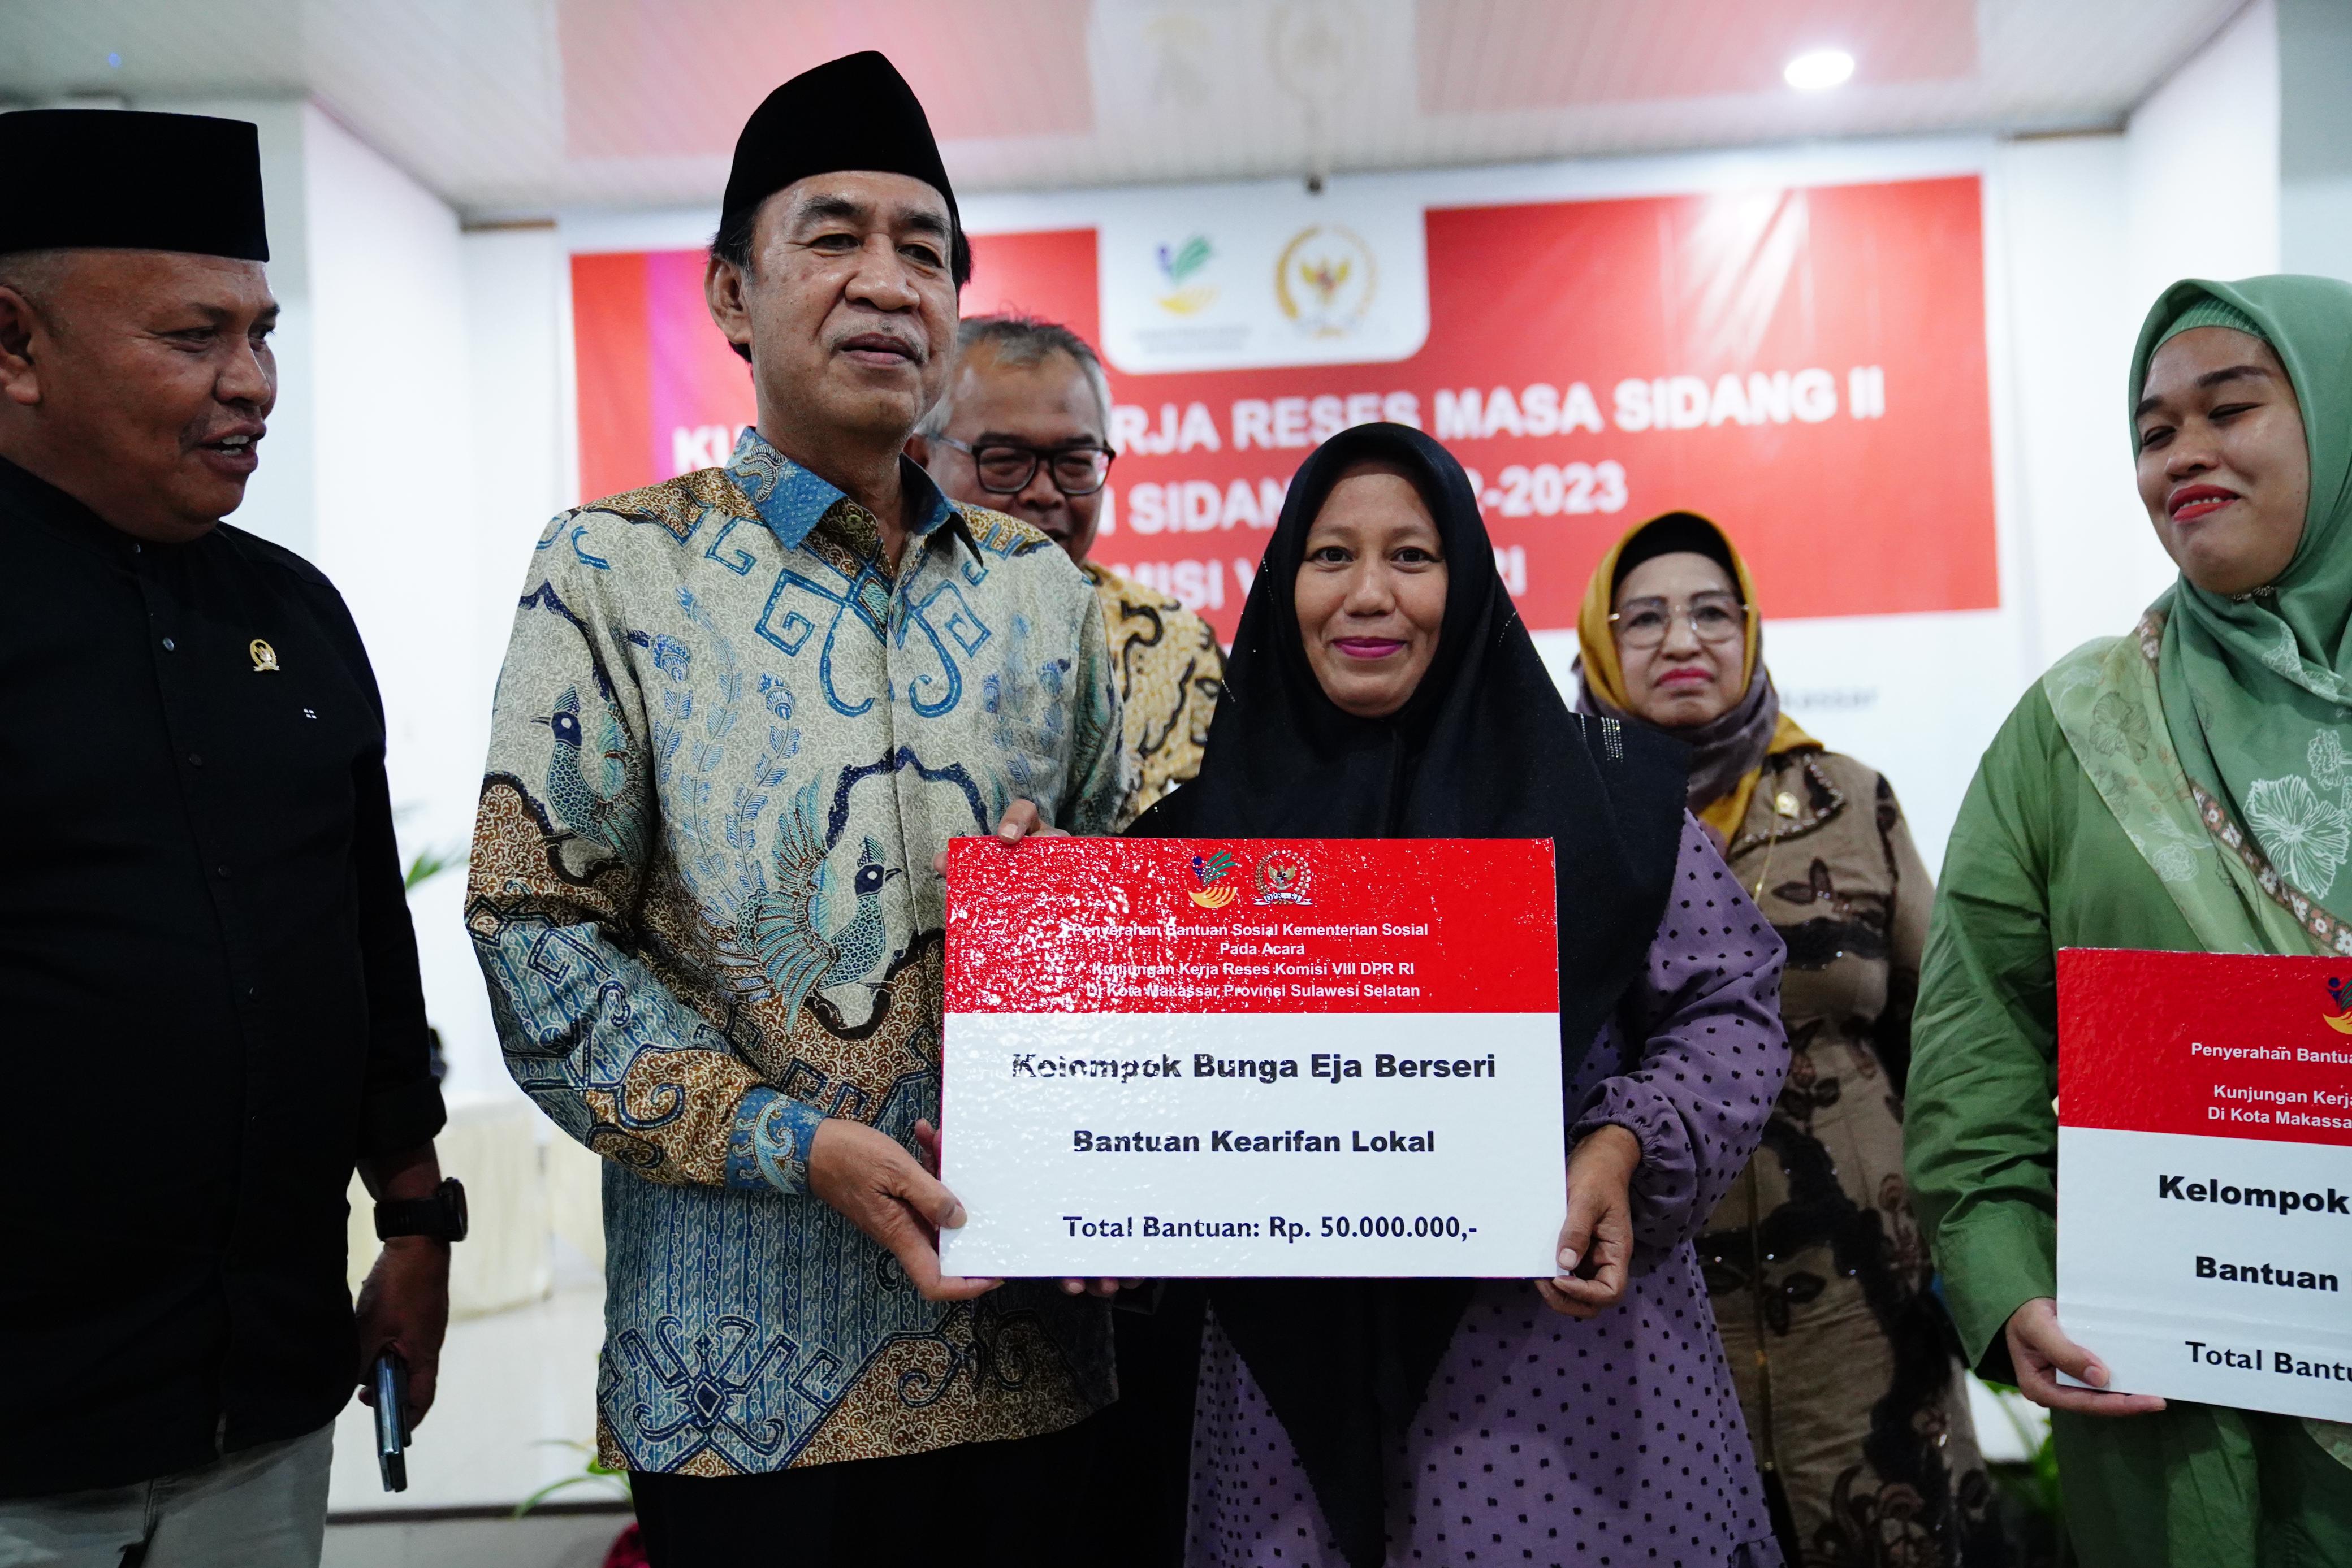 Bantuan Terus Berlanjut, Warga Makassar Berkesempatan Mendapat Bantuan Kemensos